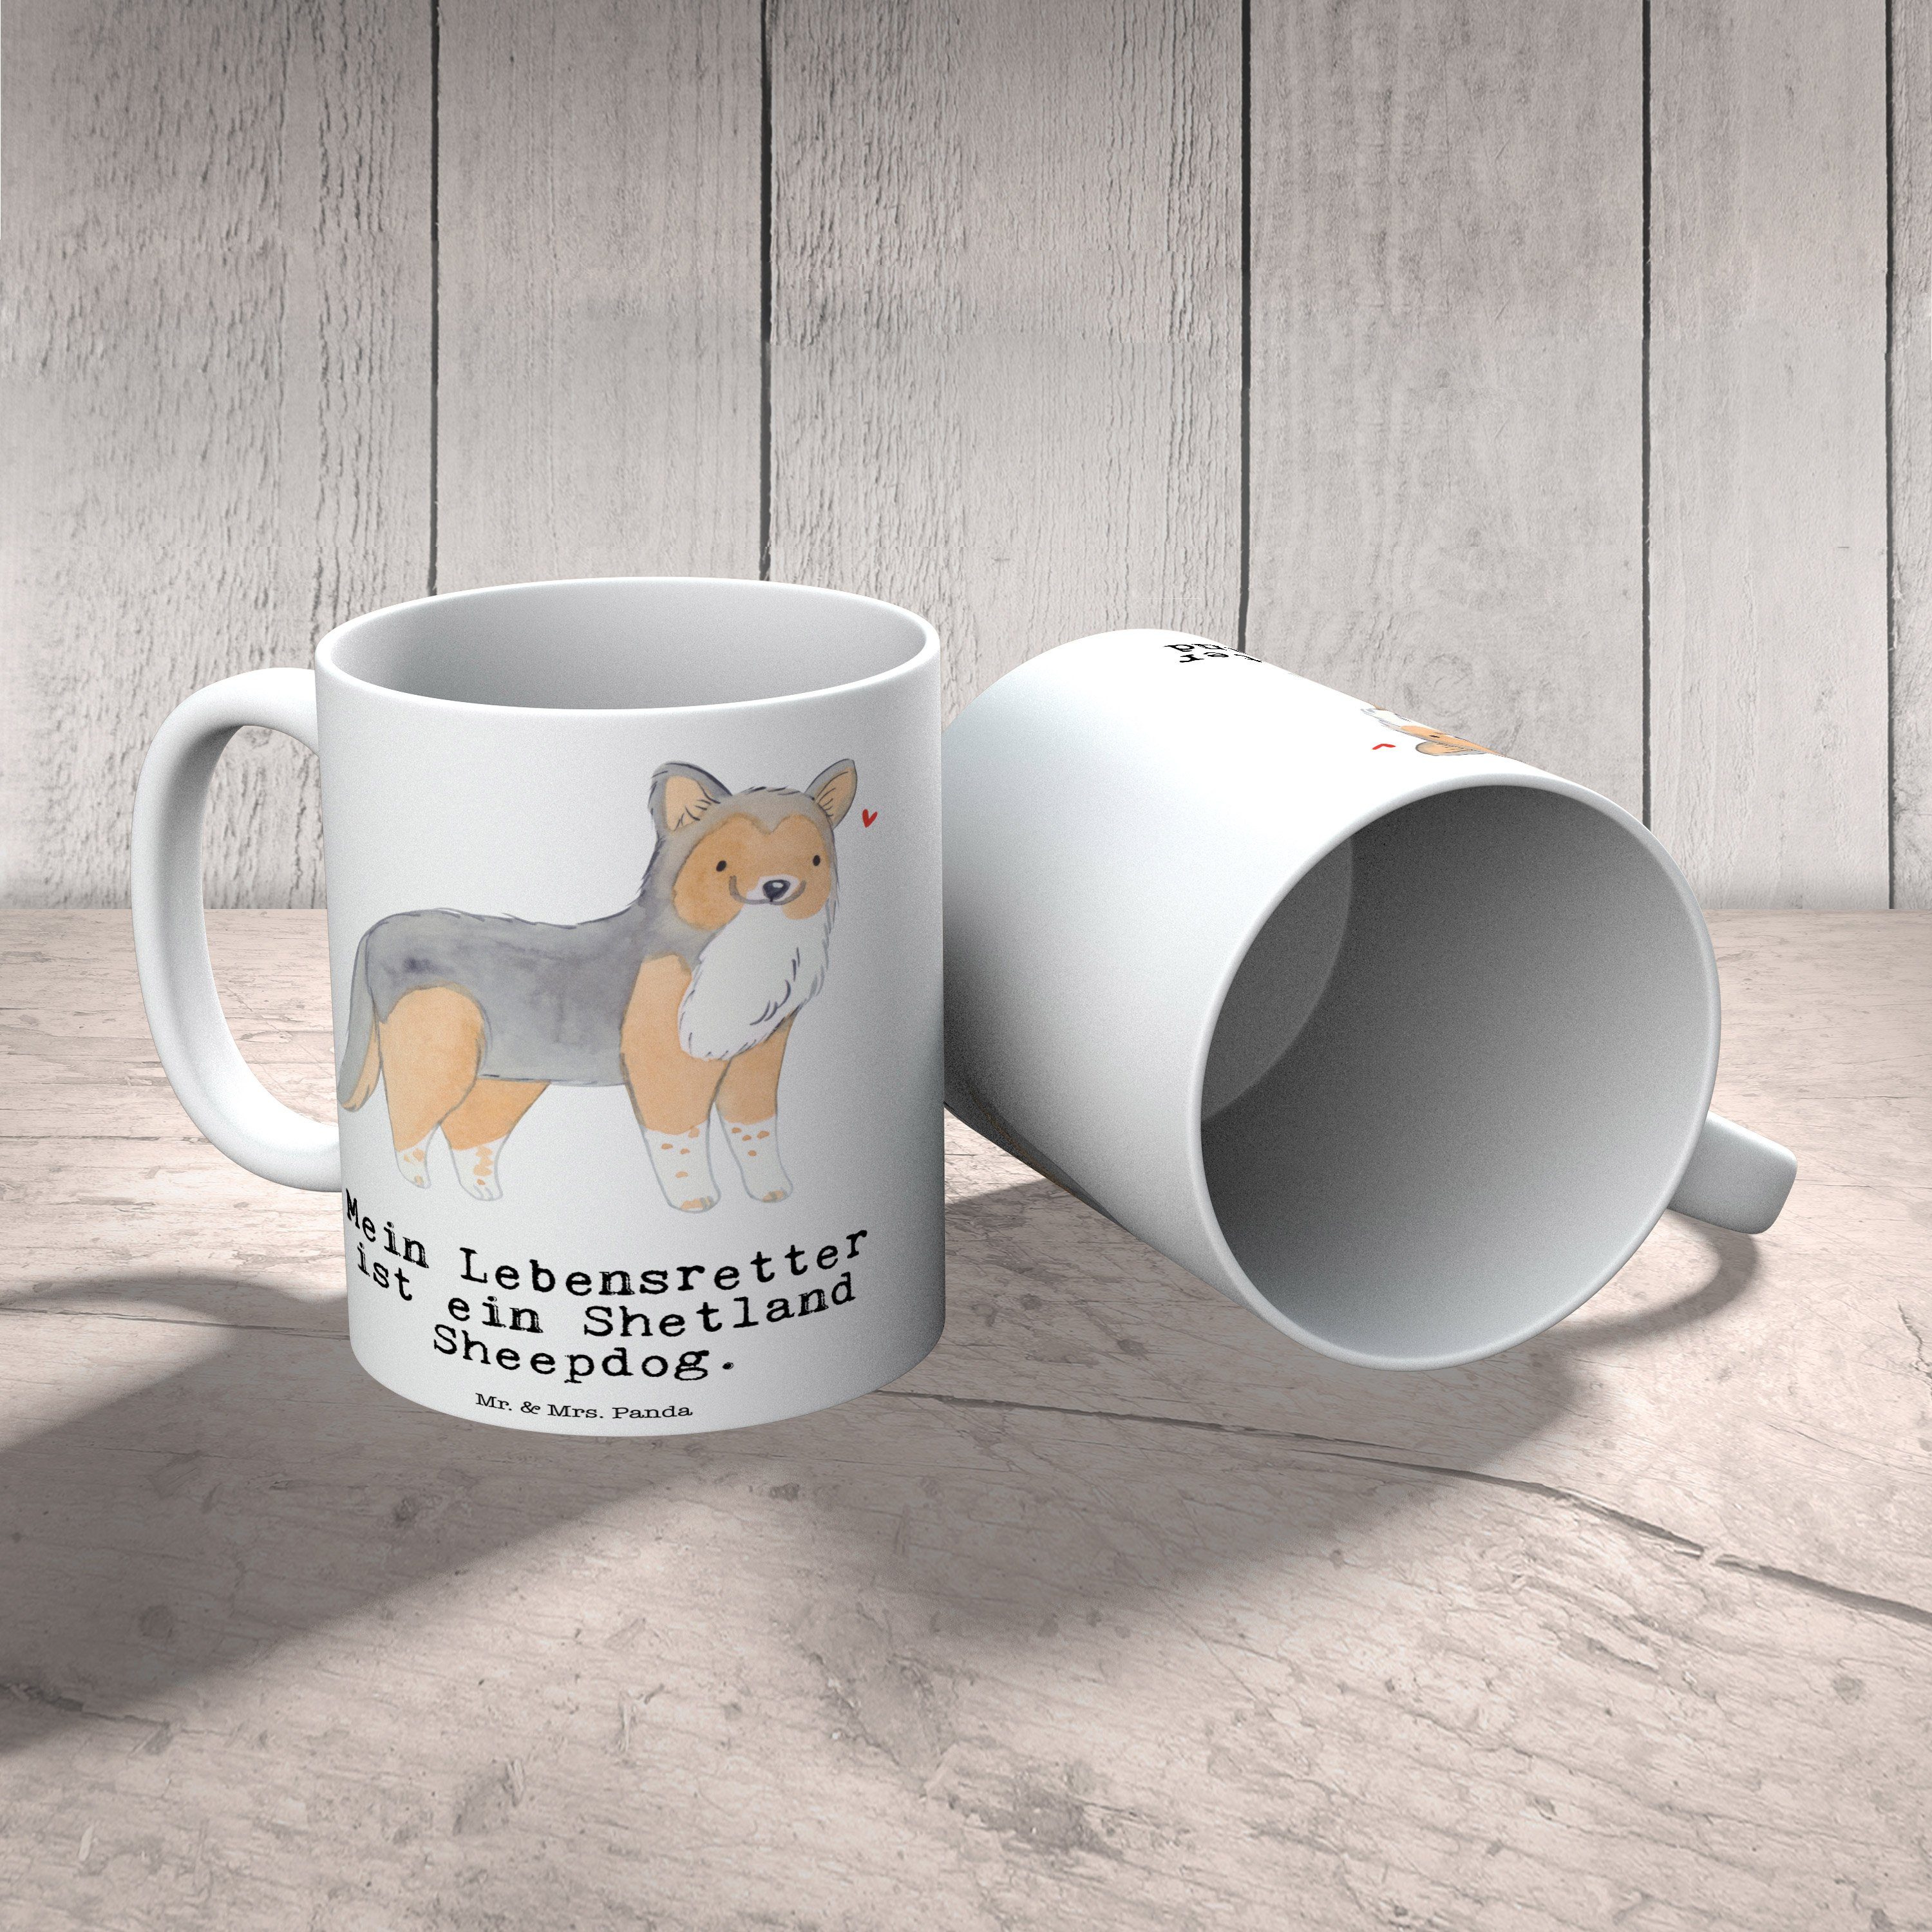 Mr. & Mrs. Panda Tasse Weiß Lebensretter - Sheepdog Keramik Hund, Tass, Geschenk, Geschenk Shetland 